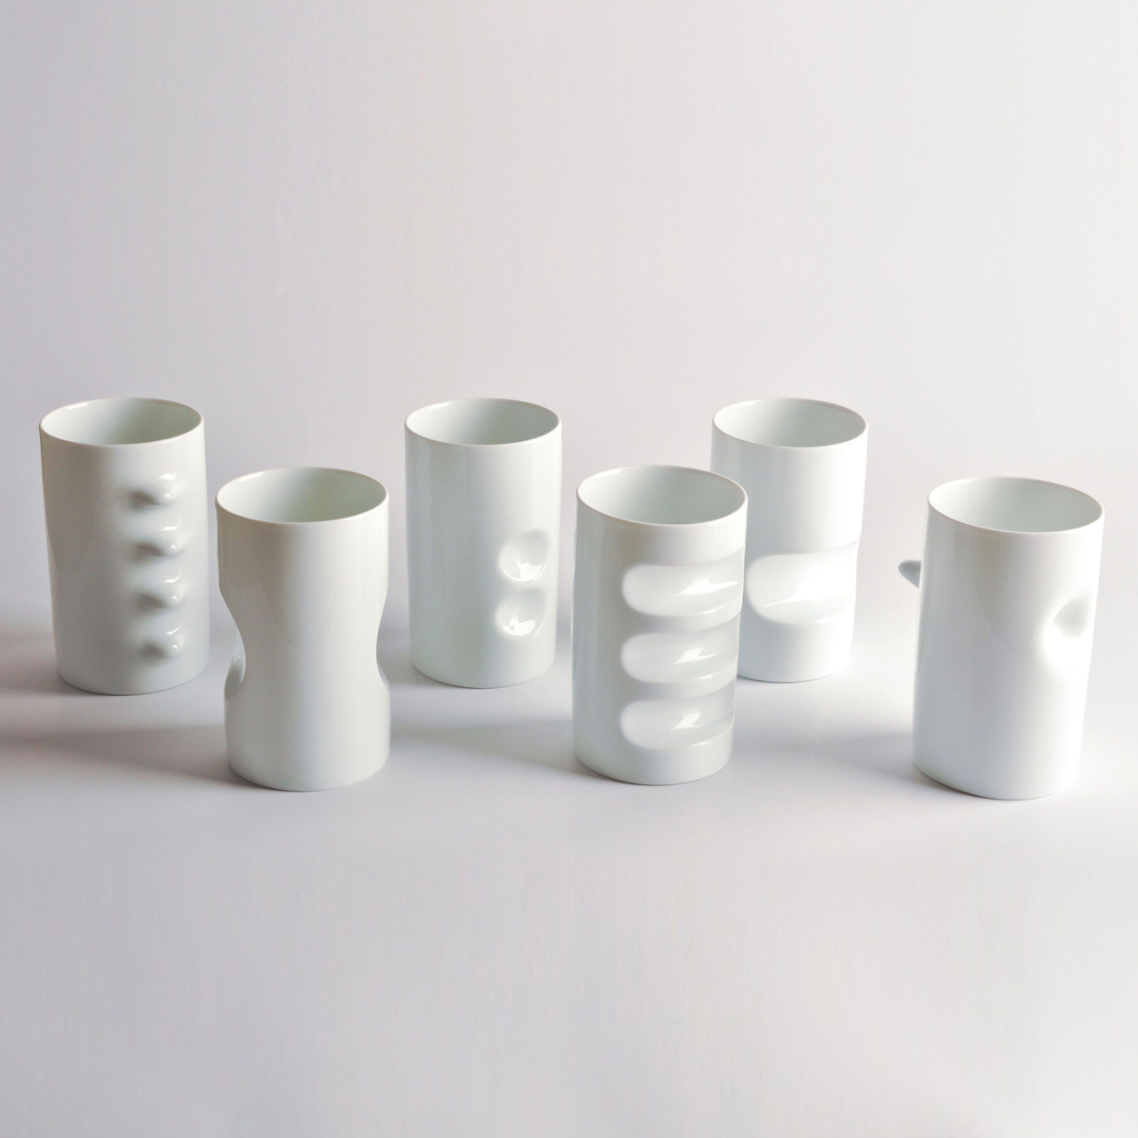 Hakusan Porcelain Teacups, Set of 6